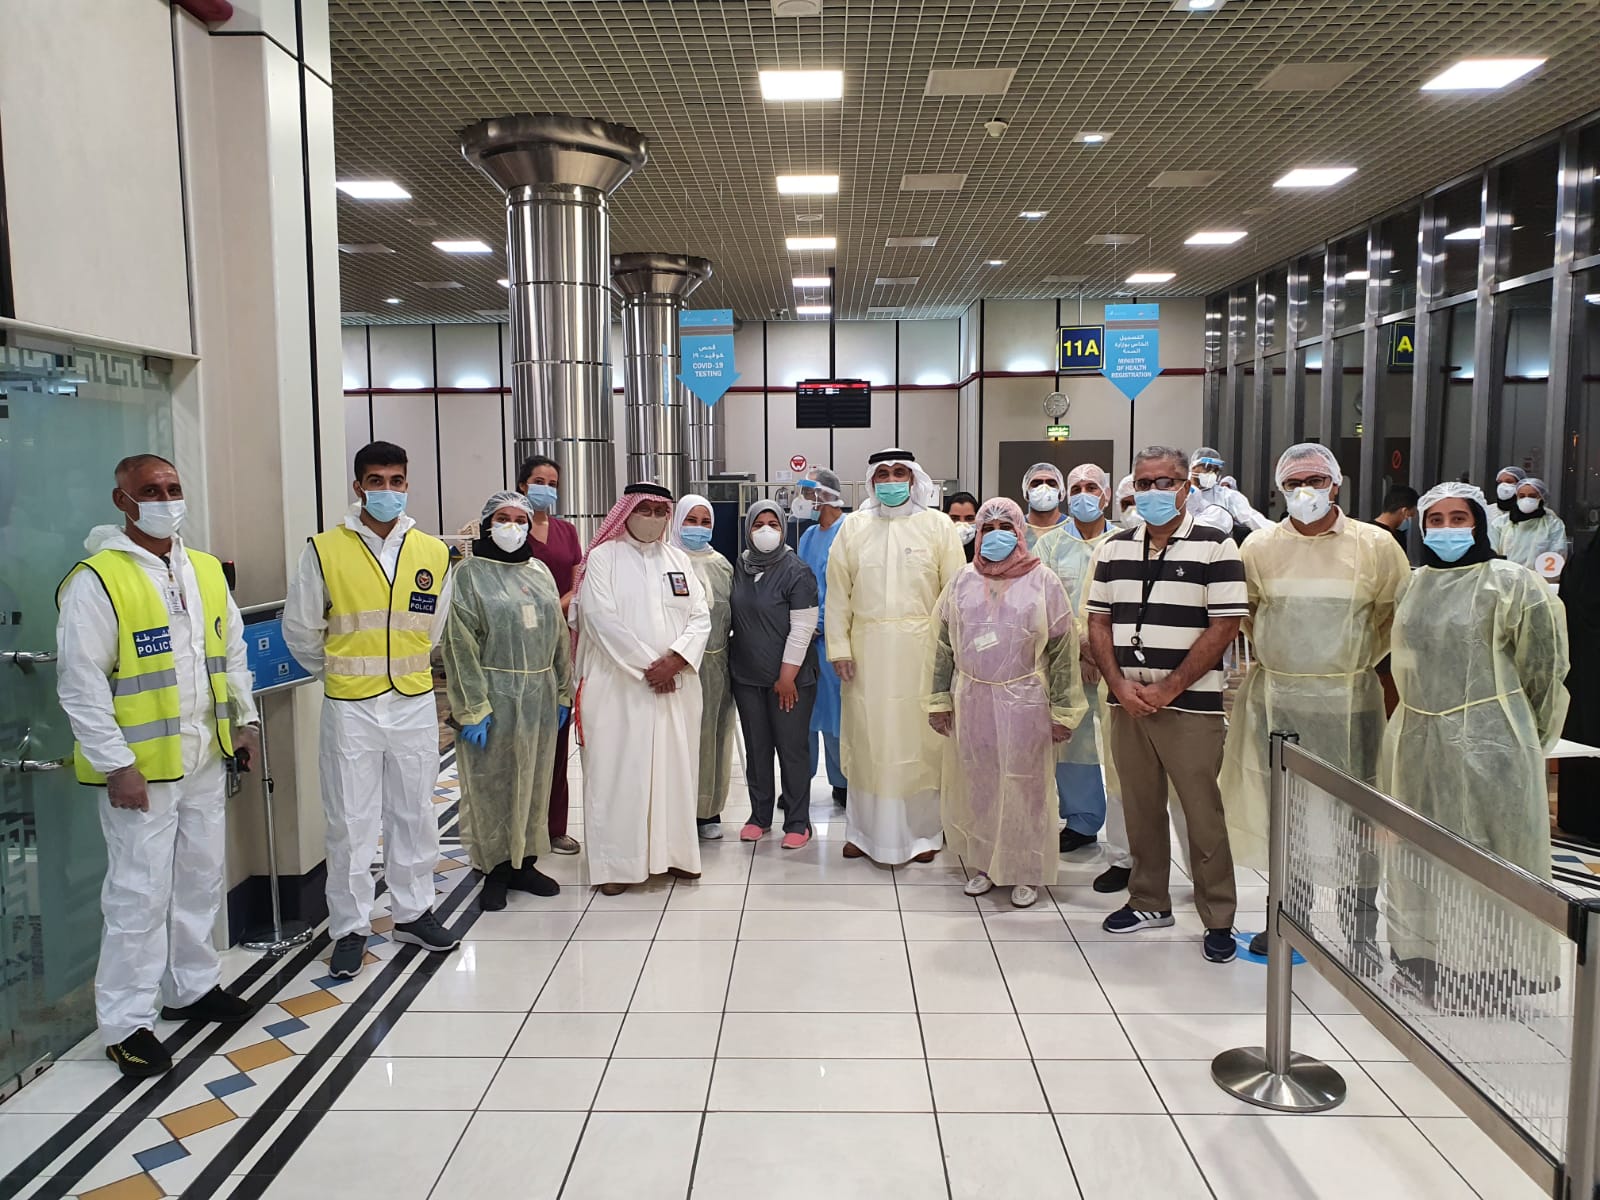 قام سعادة الدكتور وليد بن خليفة المانع وكيل وزارة الصحة مؤخرا بزيارة تفقدية لمركز فحص الكورونا كوفيد 19 للمسافرين بمطار البحرين الدولي، والذي تم تخصيصة للقادمين عبر المطار